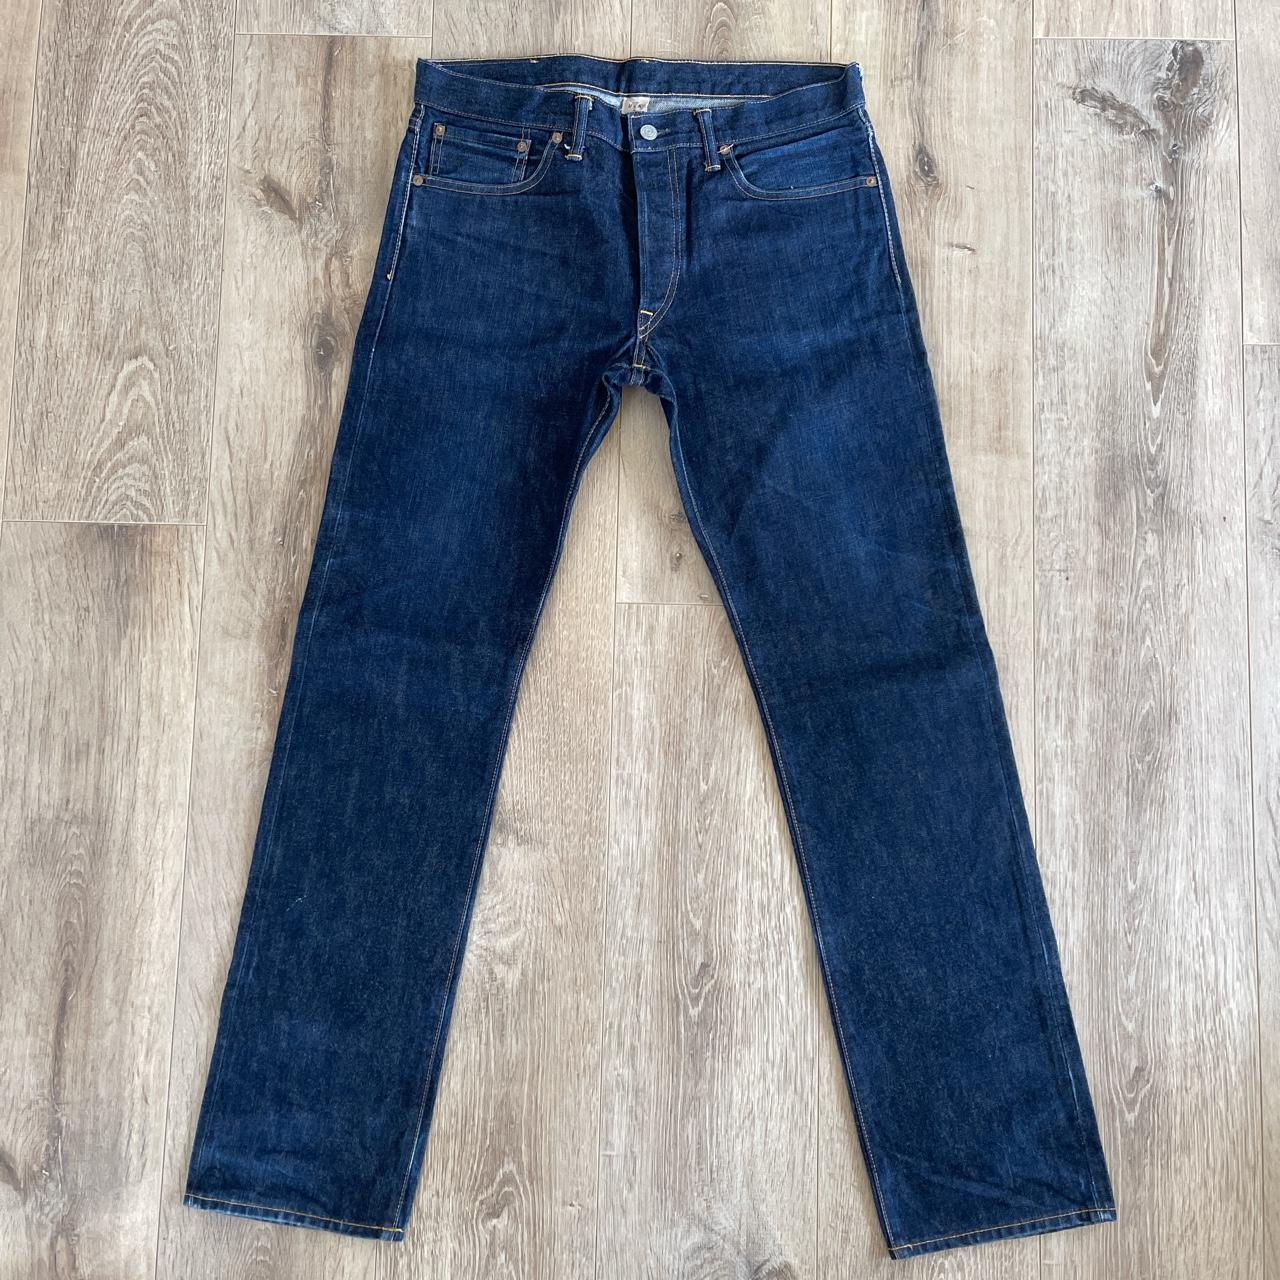 RRL Dark Blue Denim Jeans 32x34 Great Condition... - Depop